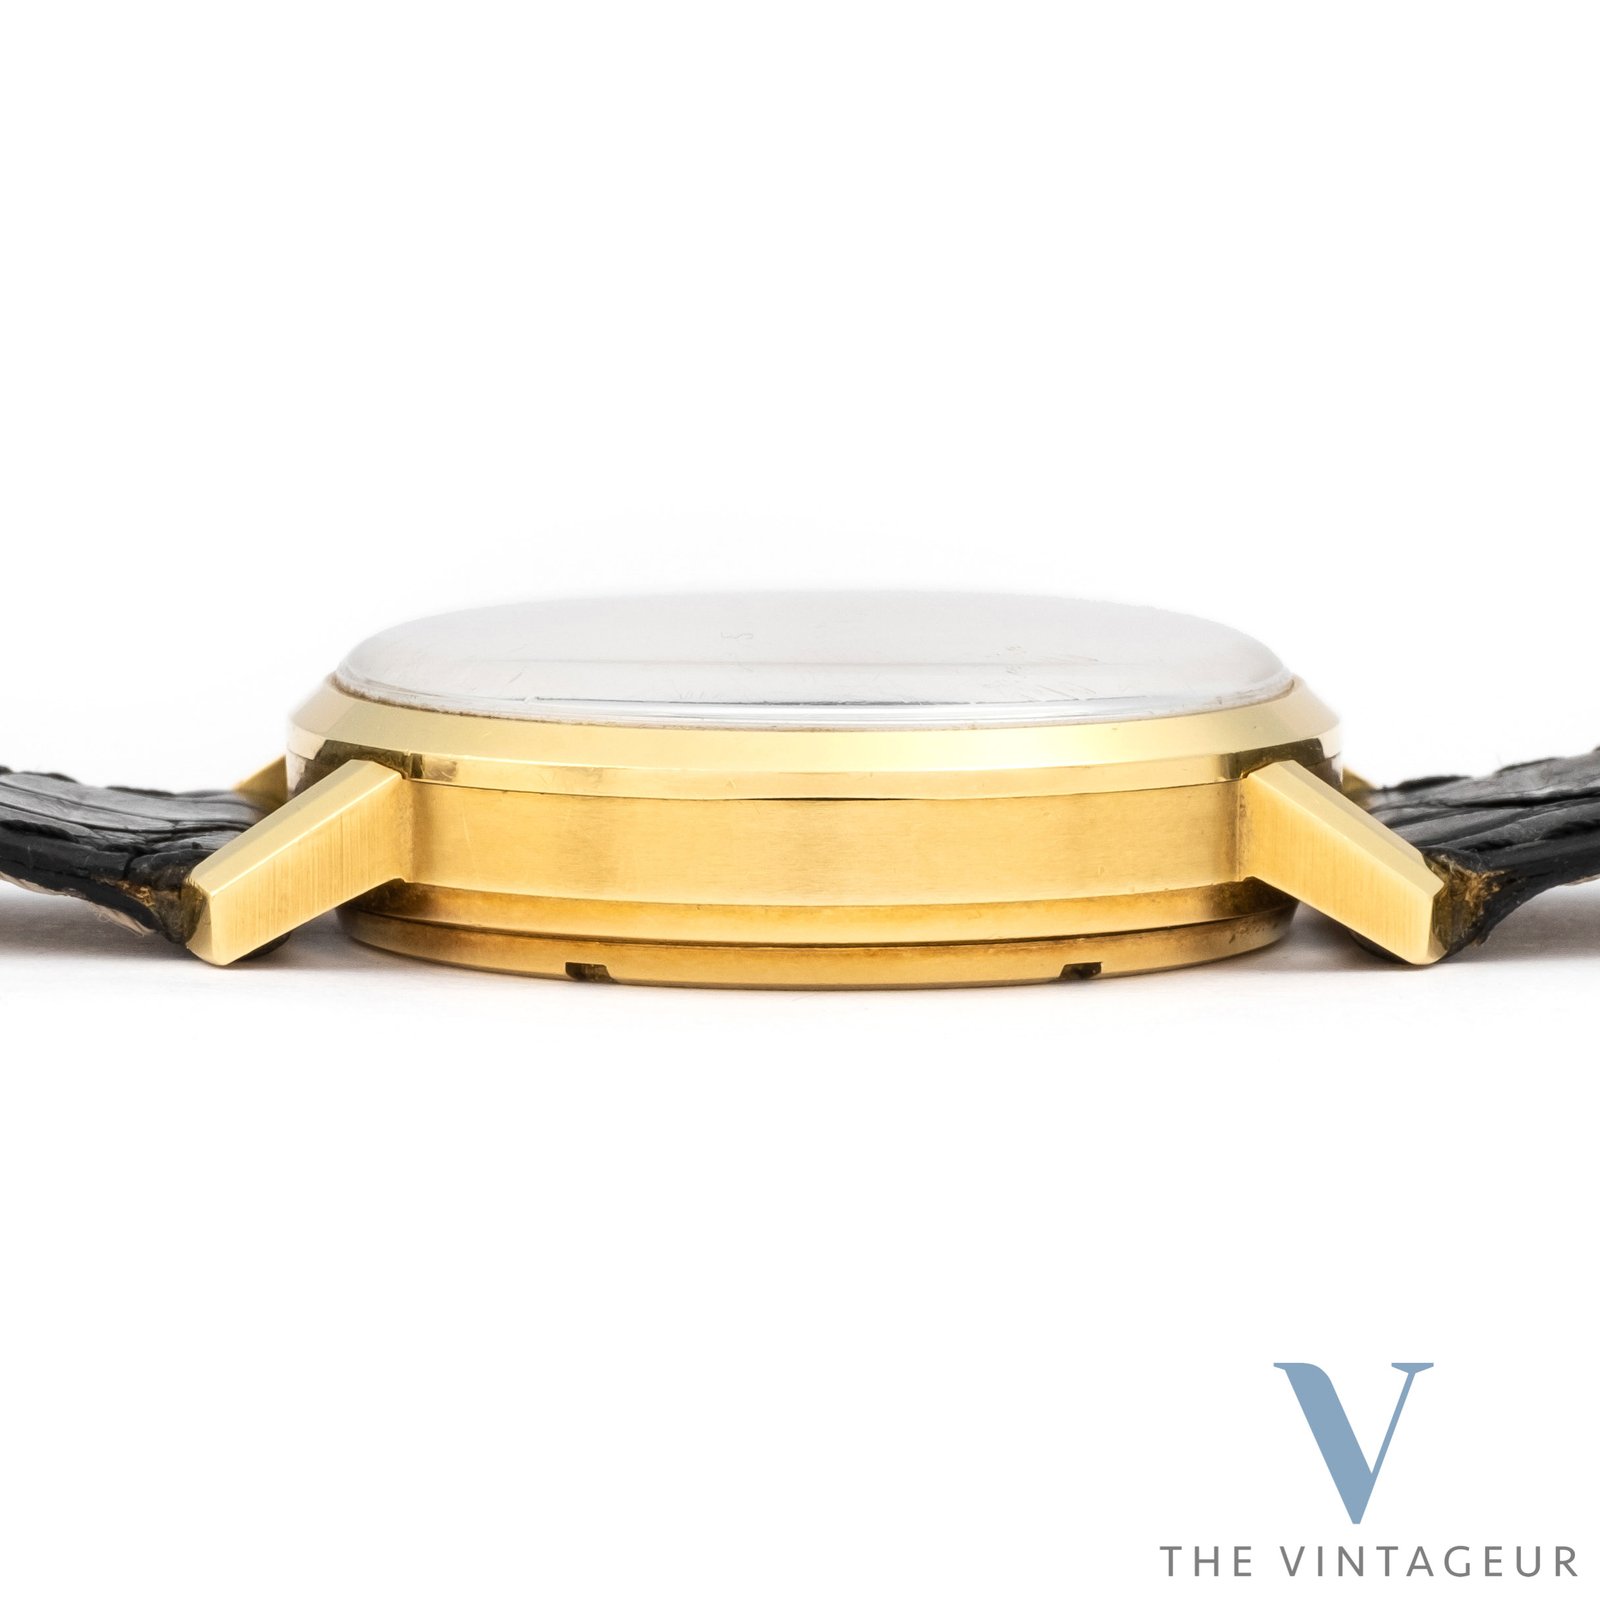 Zenith Cronograph tricompax 18k cassa in oro giallo massiccio ref:a273 inizio anni '60